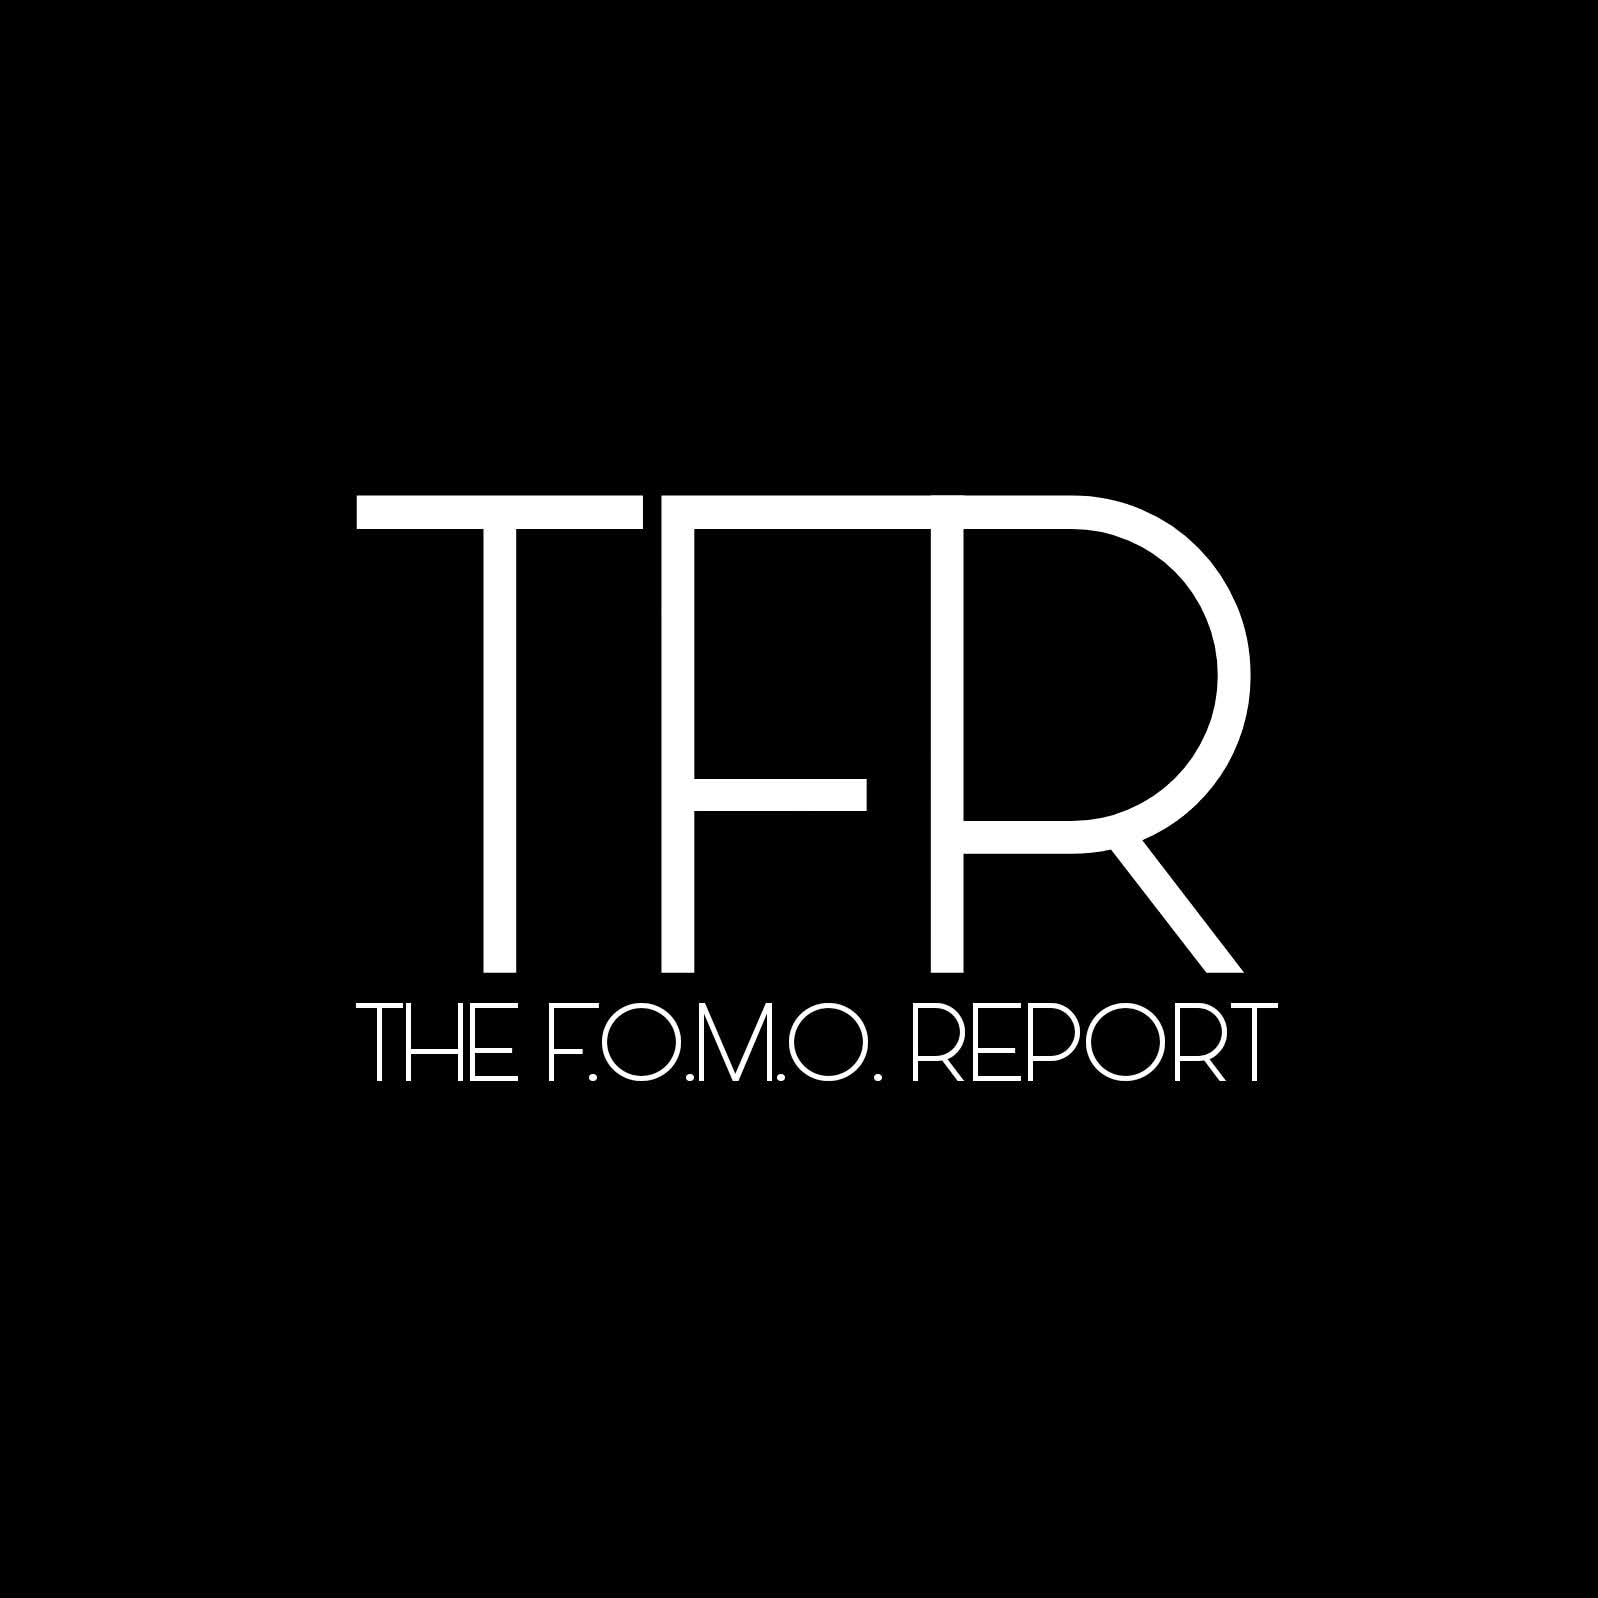 THE FOMO REPORT